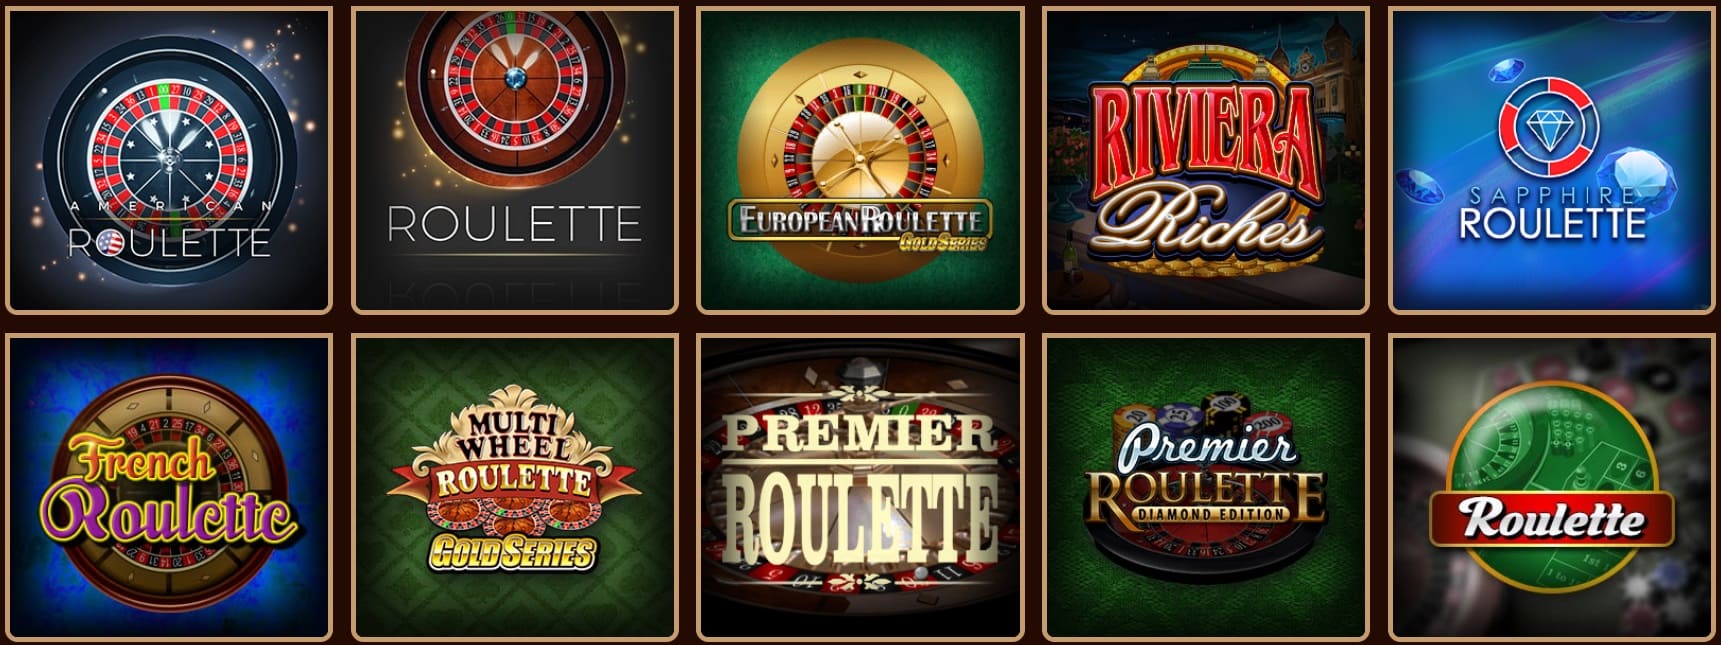 river belle casino roulette